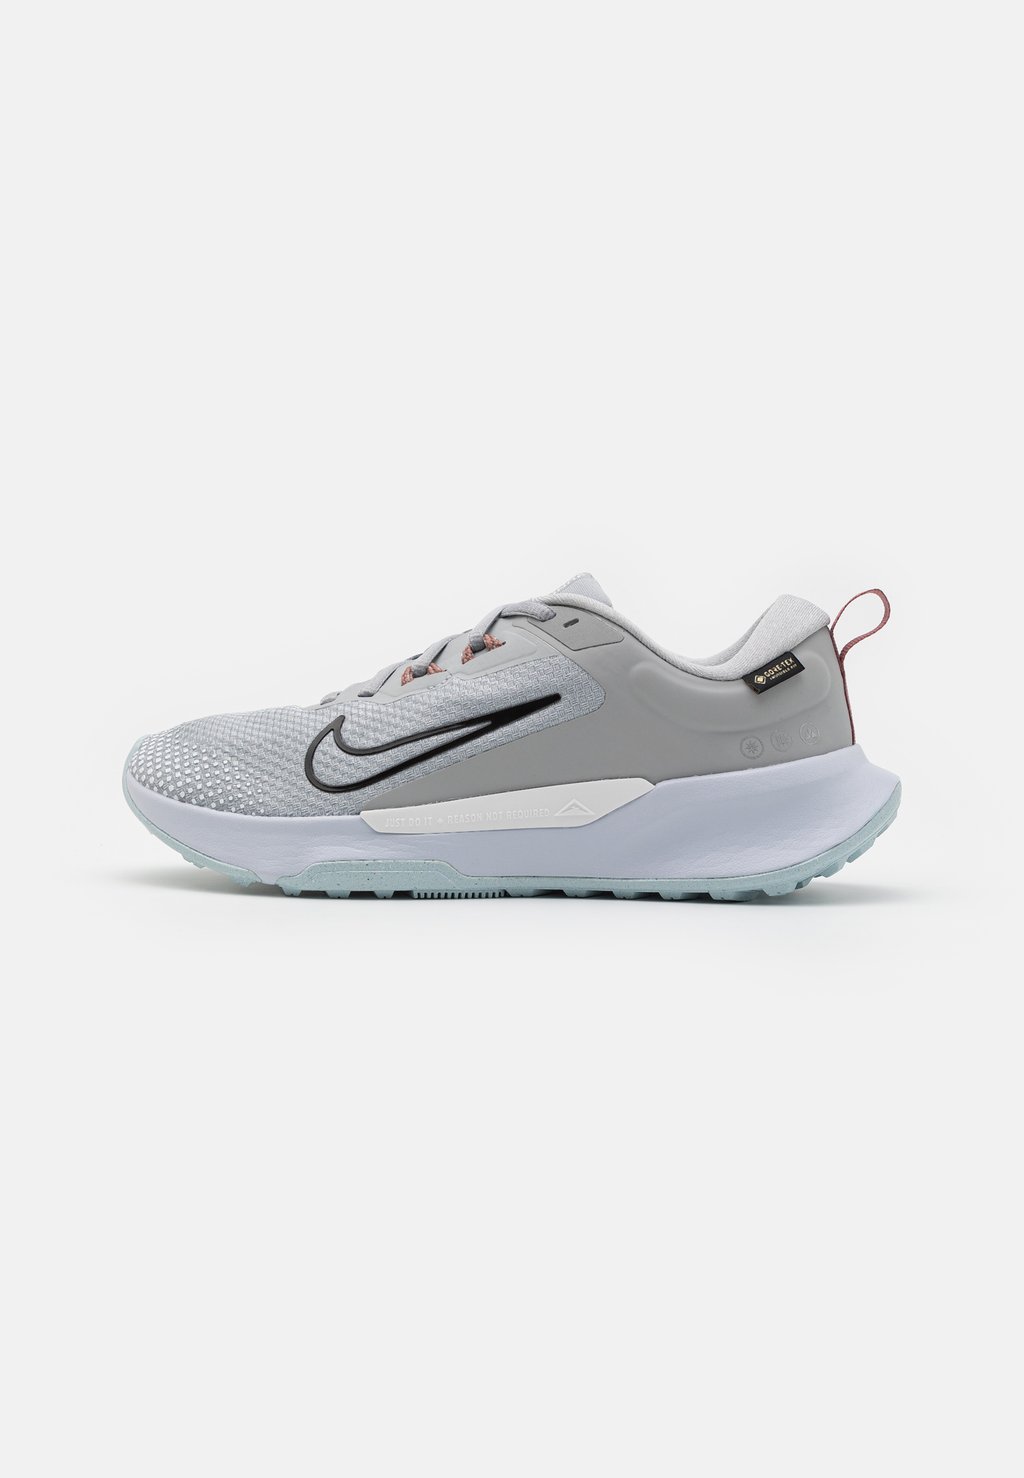 Кроссовки для бега по пересеченной местности JUNIPER 2 GTX Nike, цвет light smoke grey/black/football grey/glacier blue/white